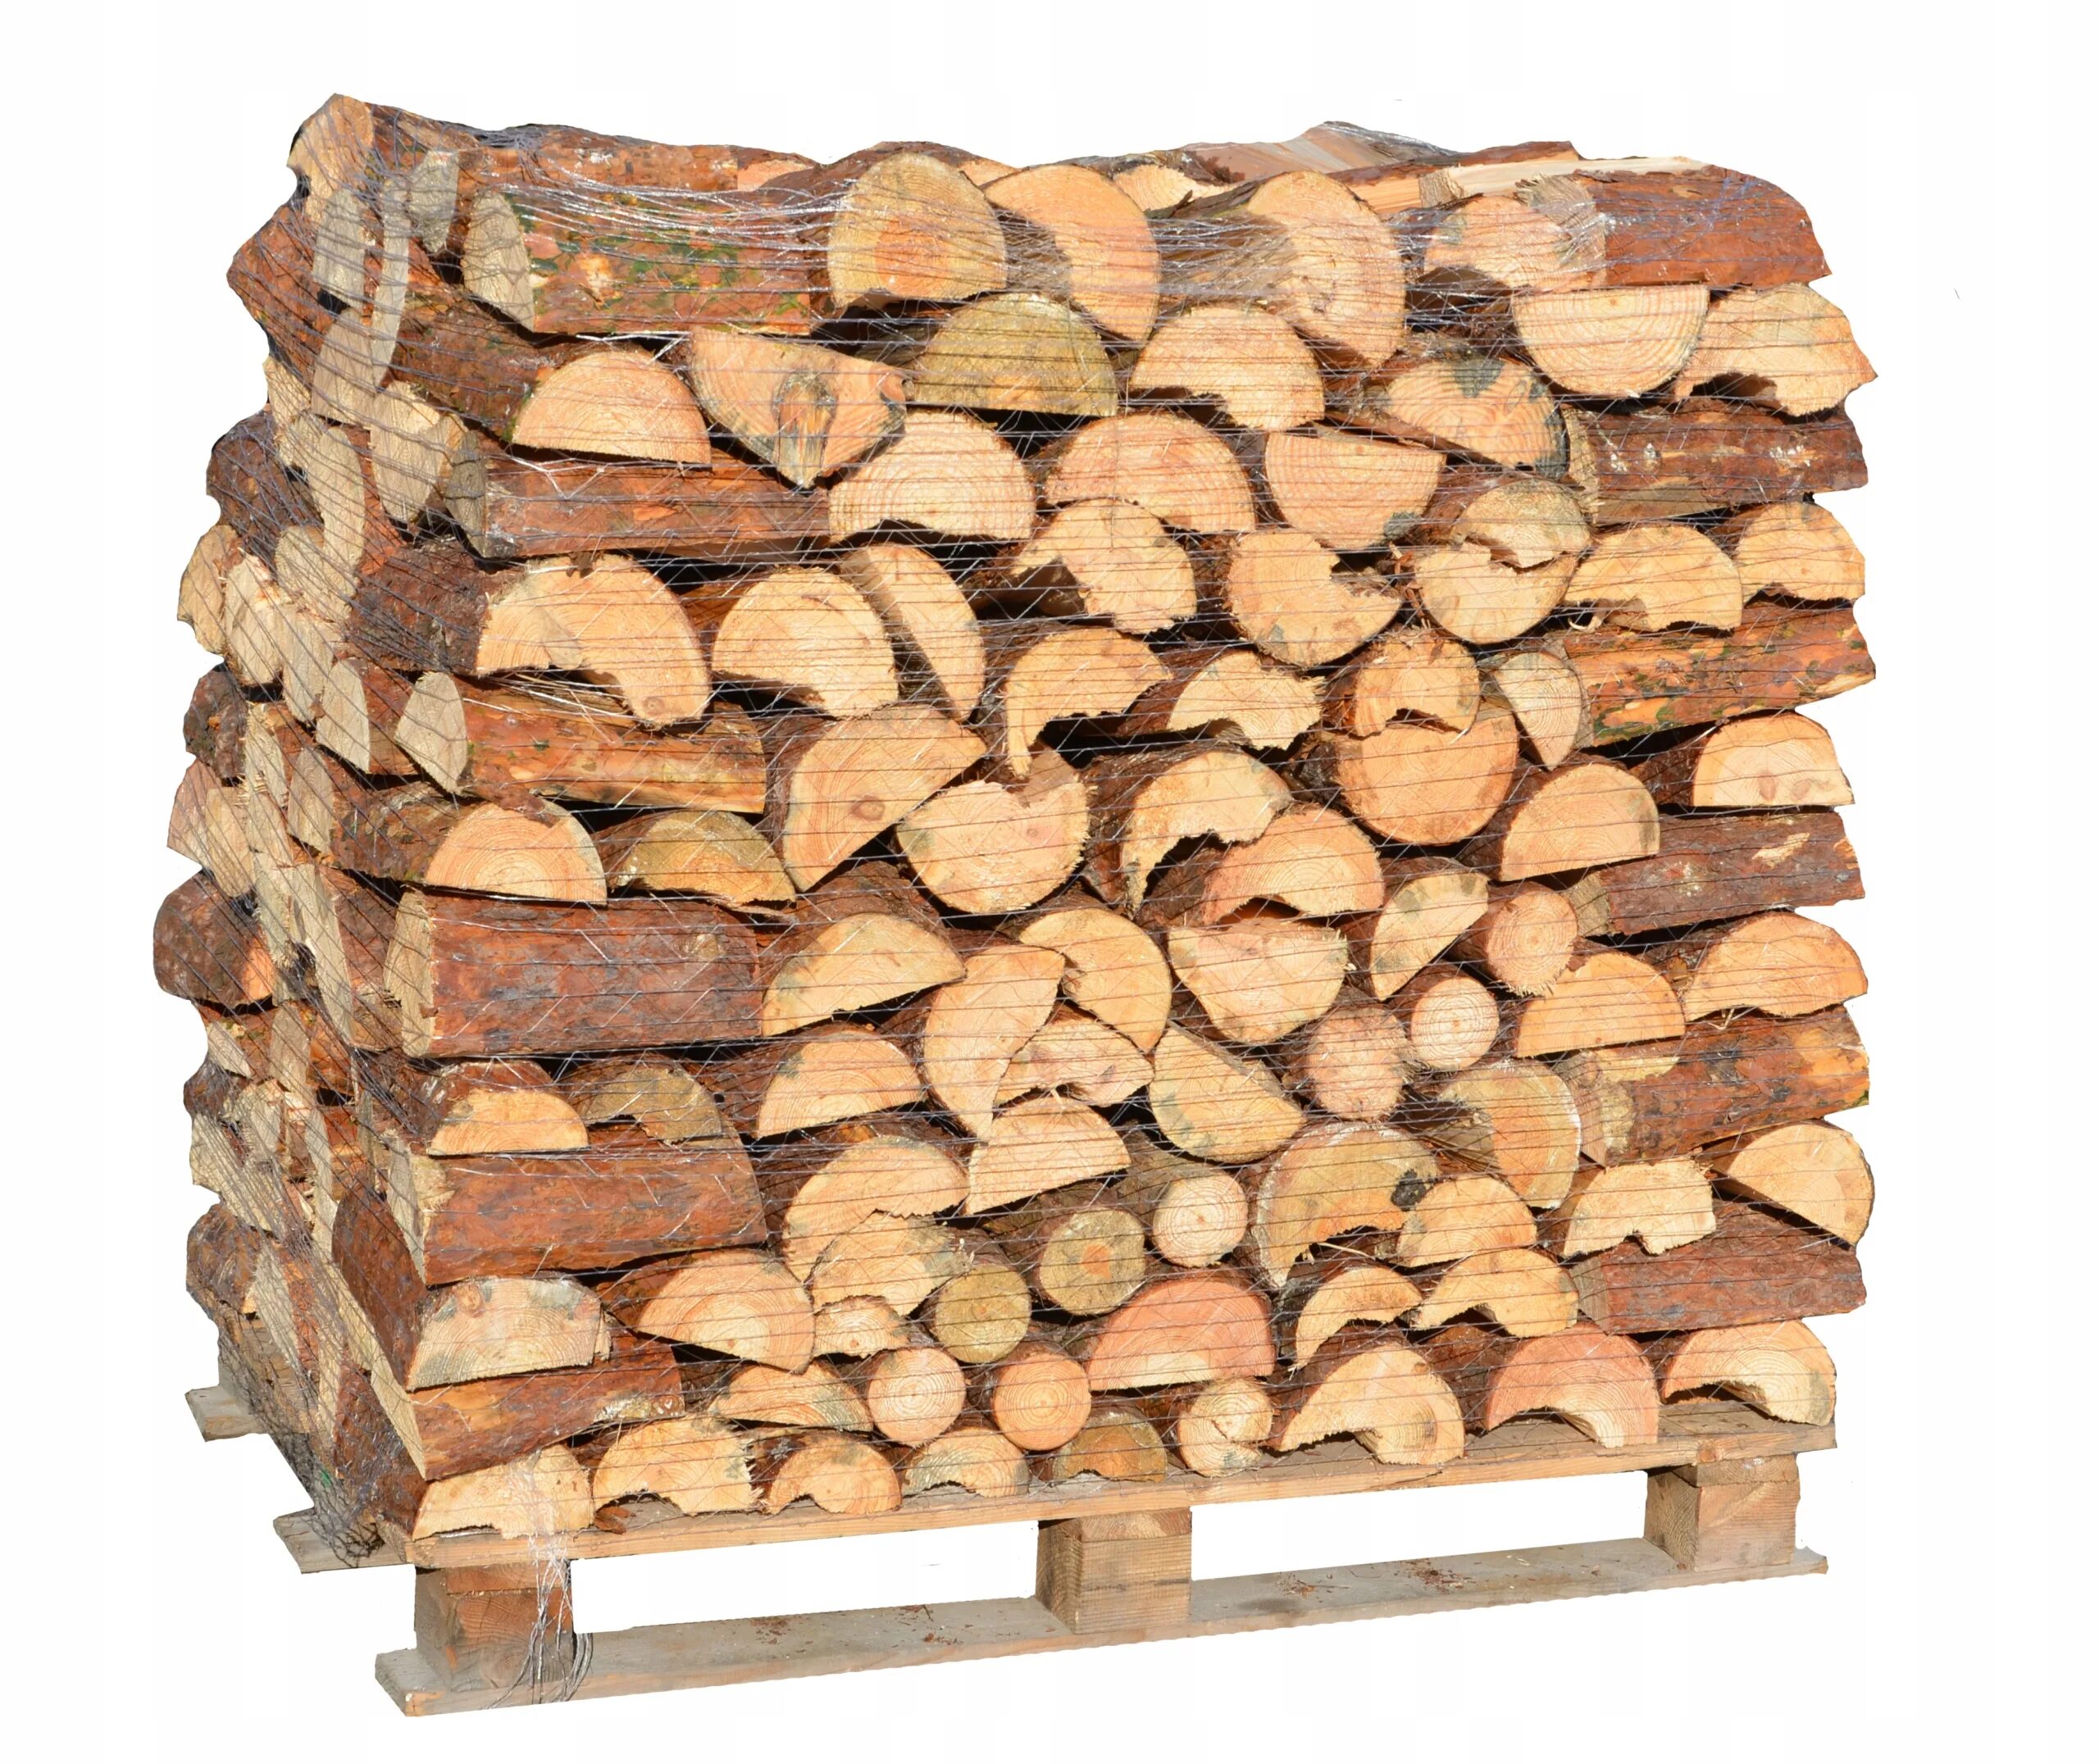 Grillkoff дрова берёзовые, 0.015 м³. Печь на дровах. Сосна колотая дрова. Дрова еловые. Купить дрова в брянске